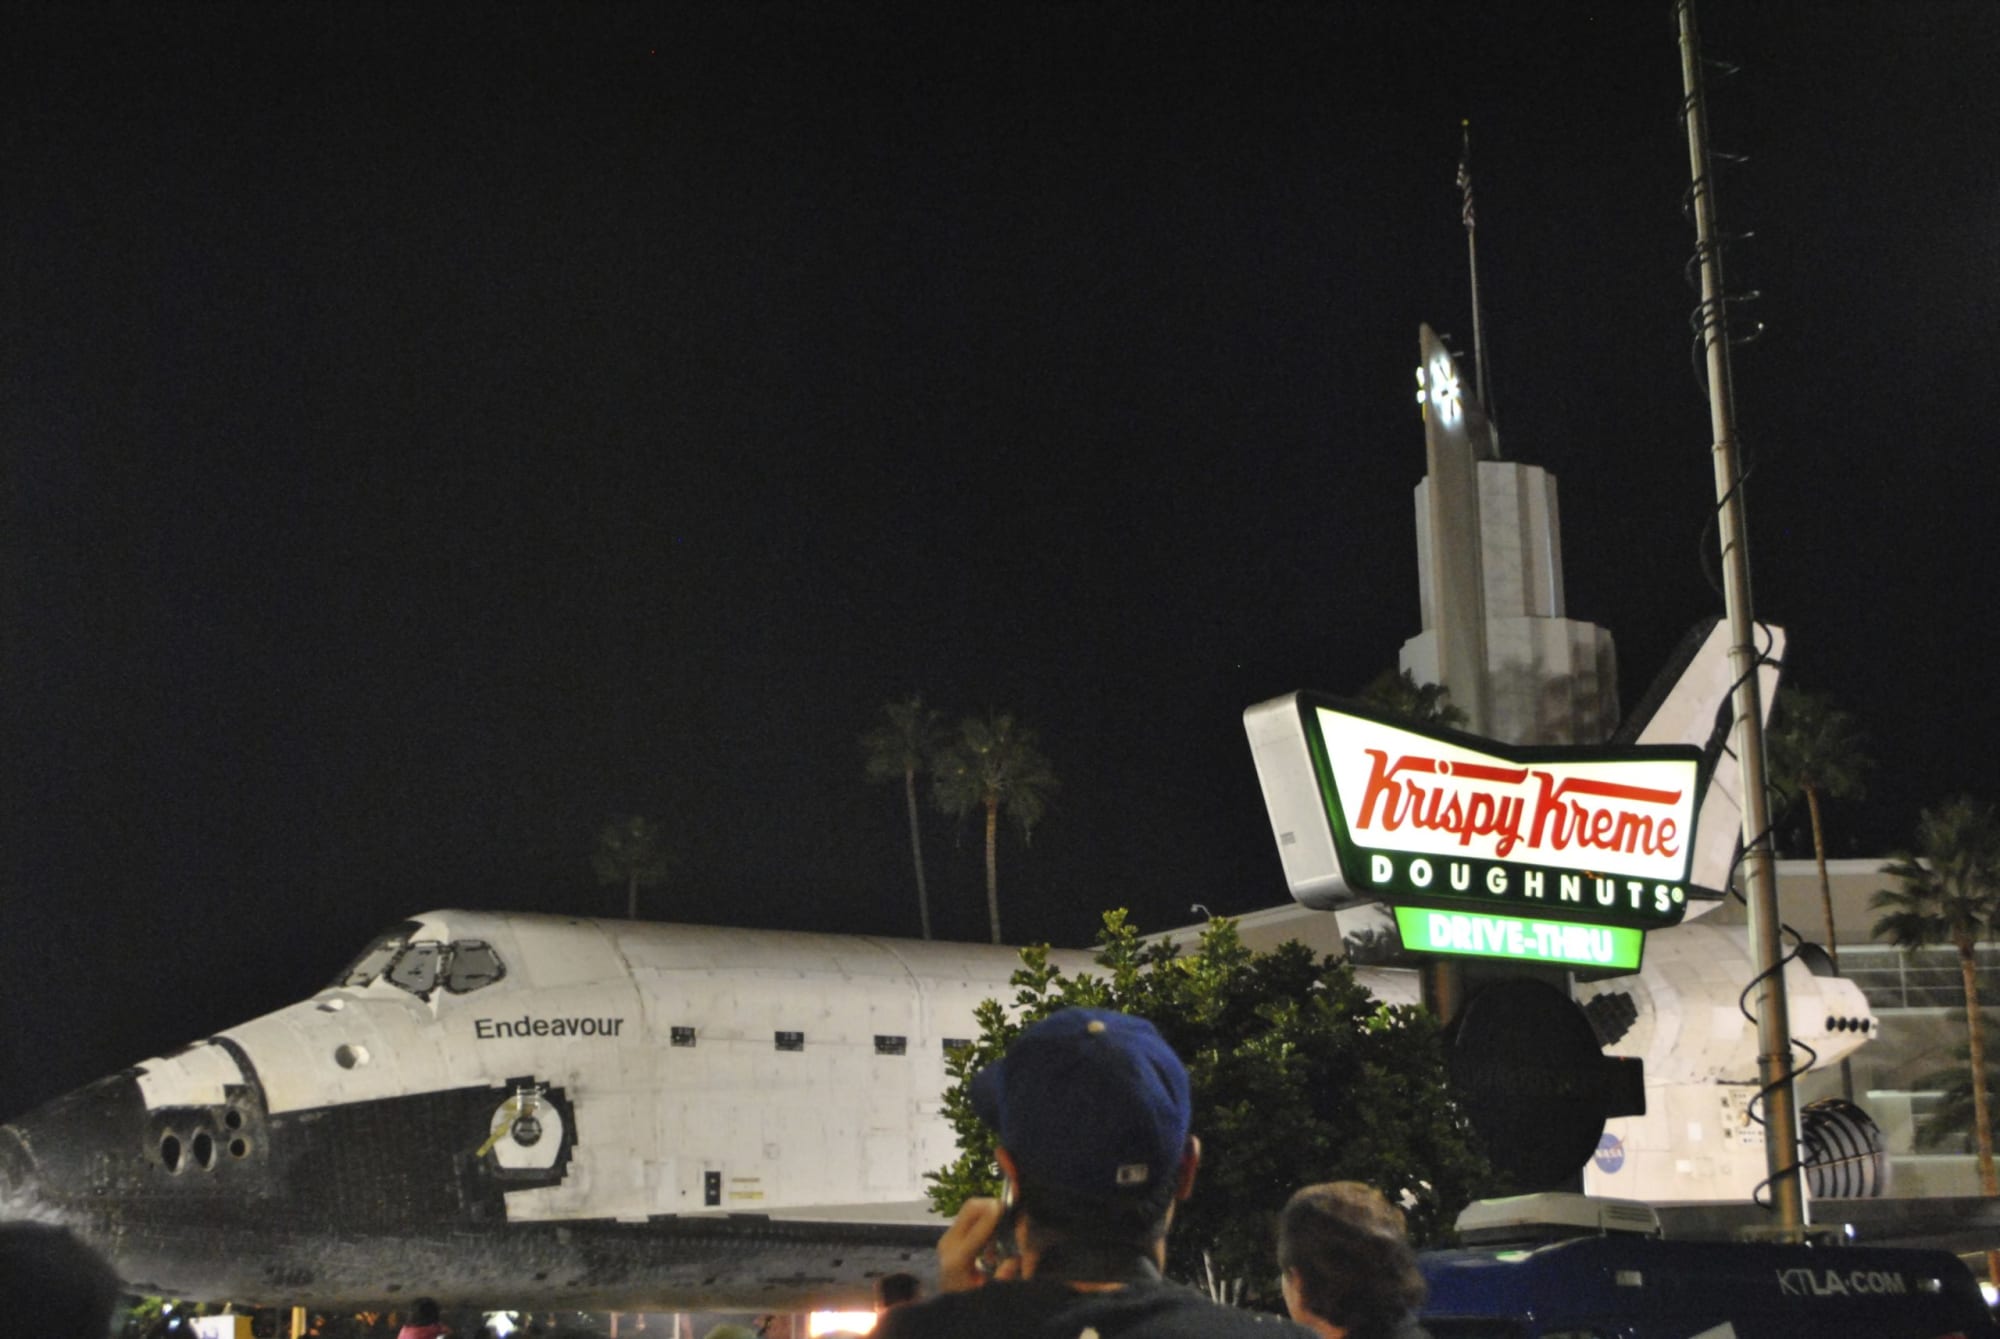 Endeavor shuttle with Krispy Kreme sign